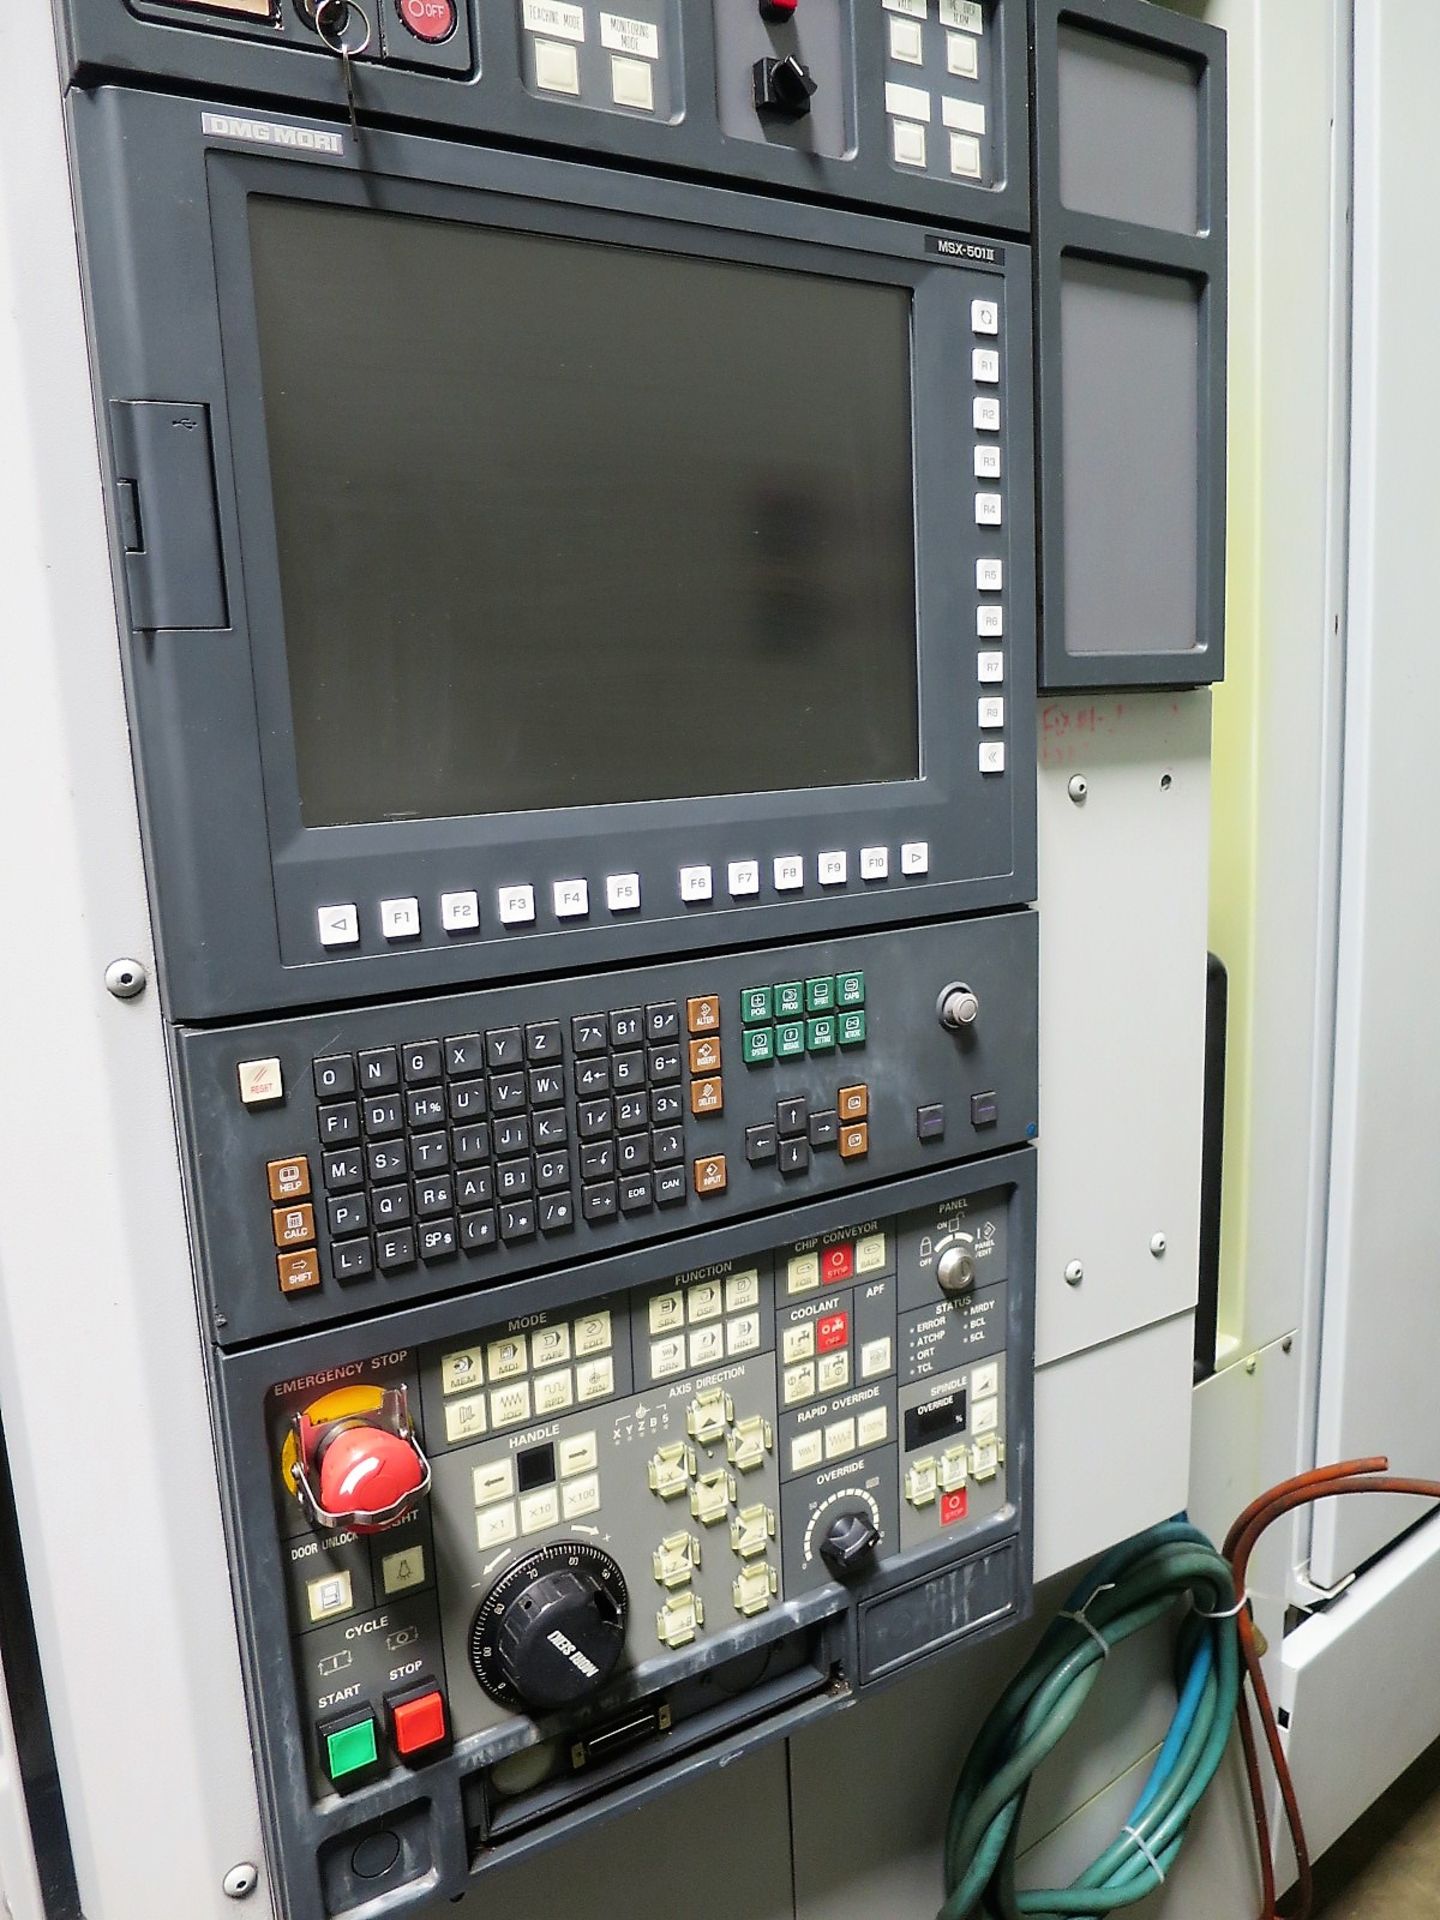 2005 MORI SEIKI NH5000/50 CNC HORIZONTAL MACHINING CENTER, S/N NH501EC0826 - Image 2 of 9